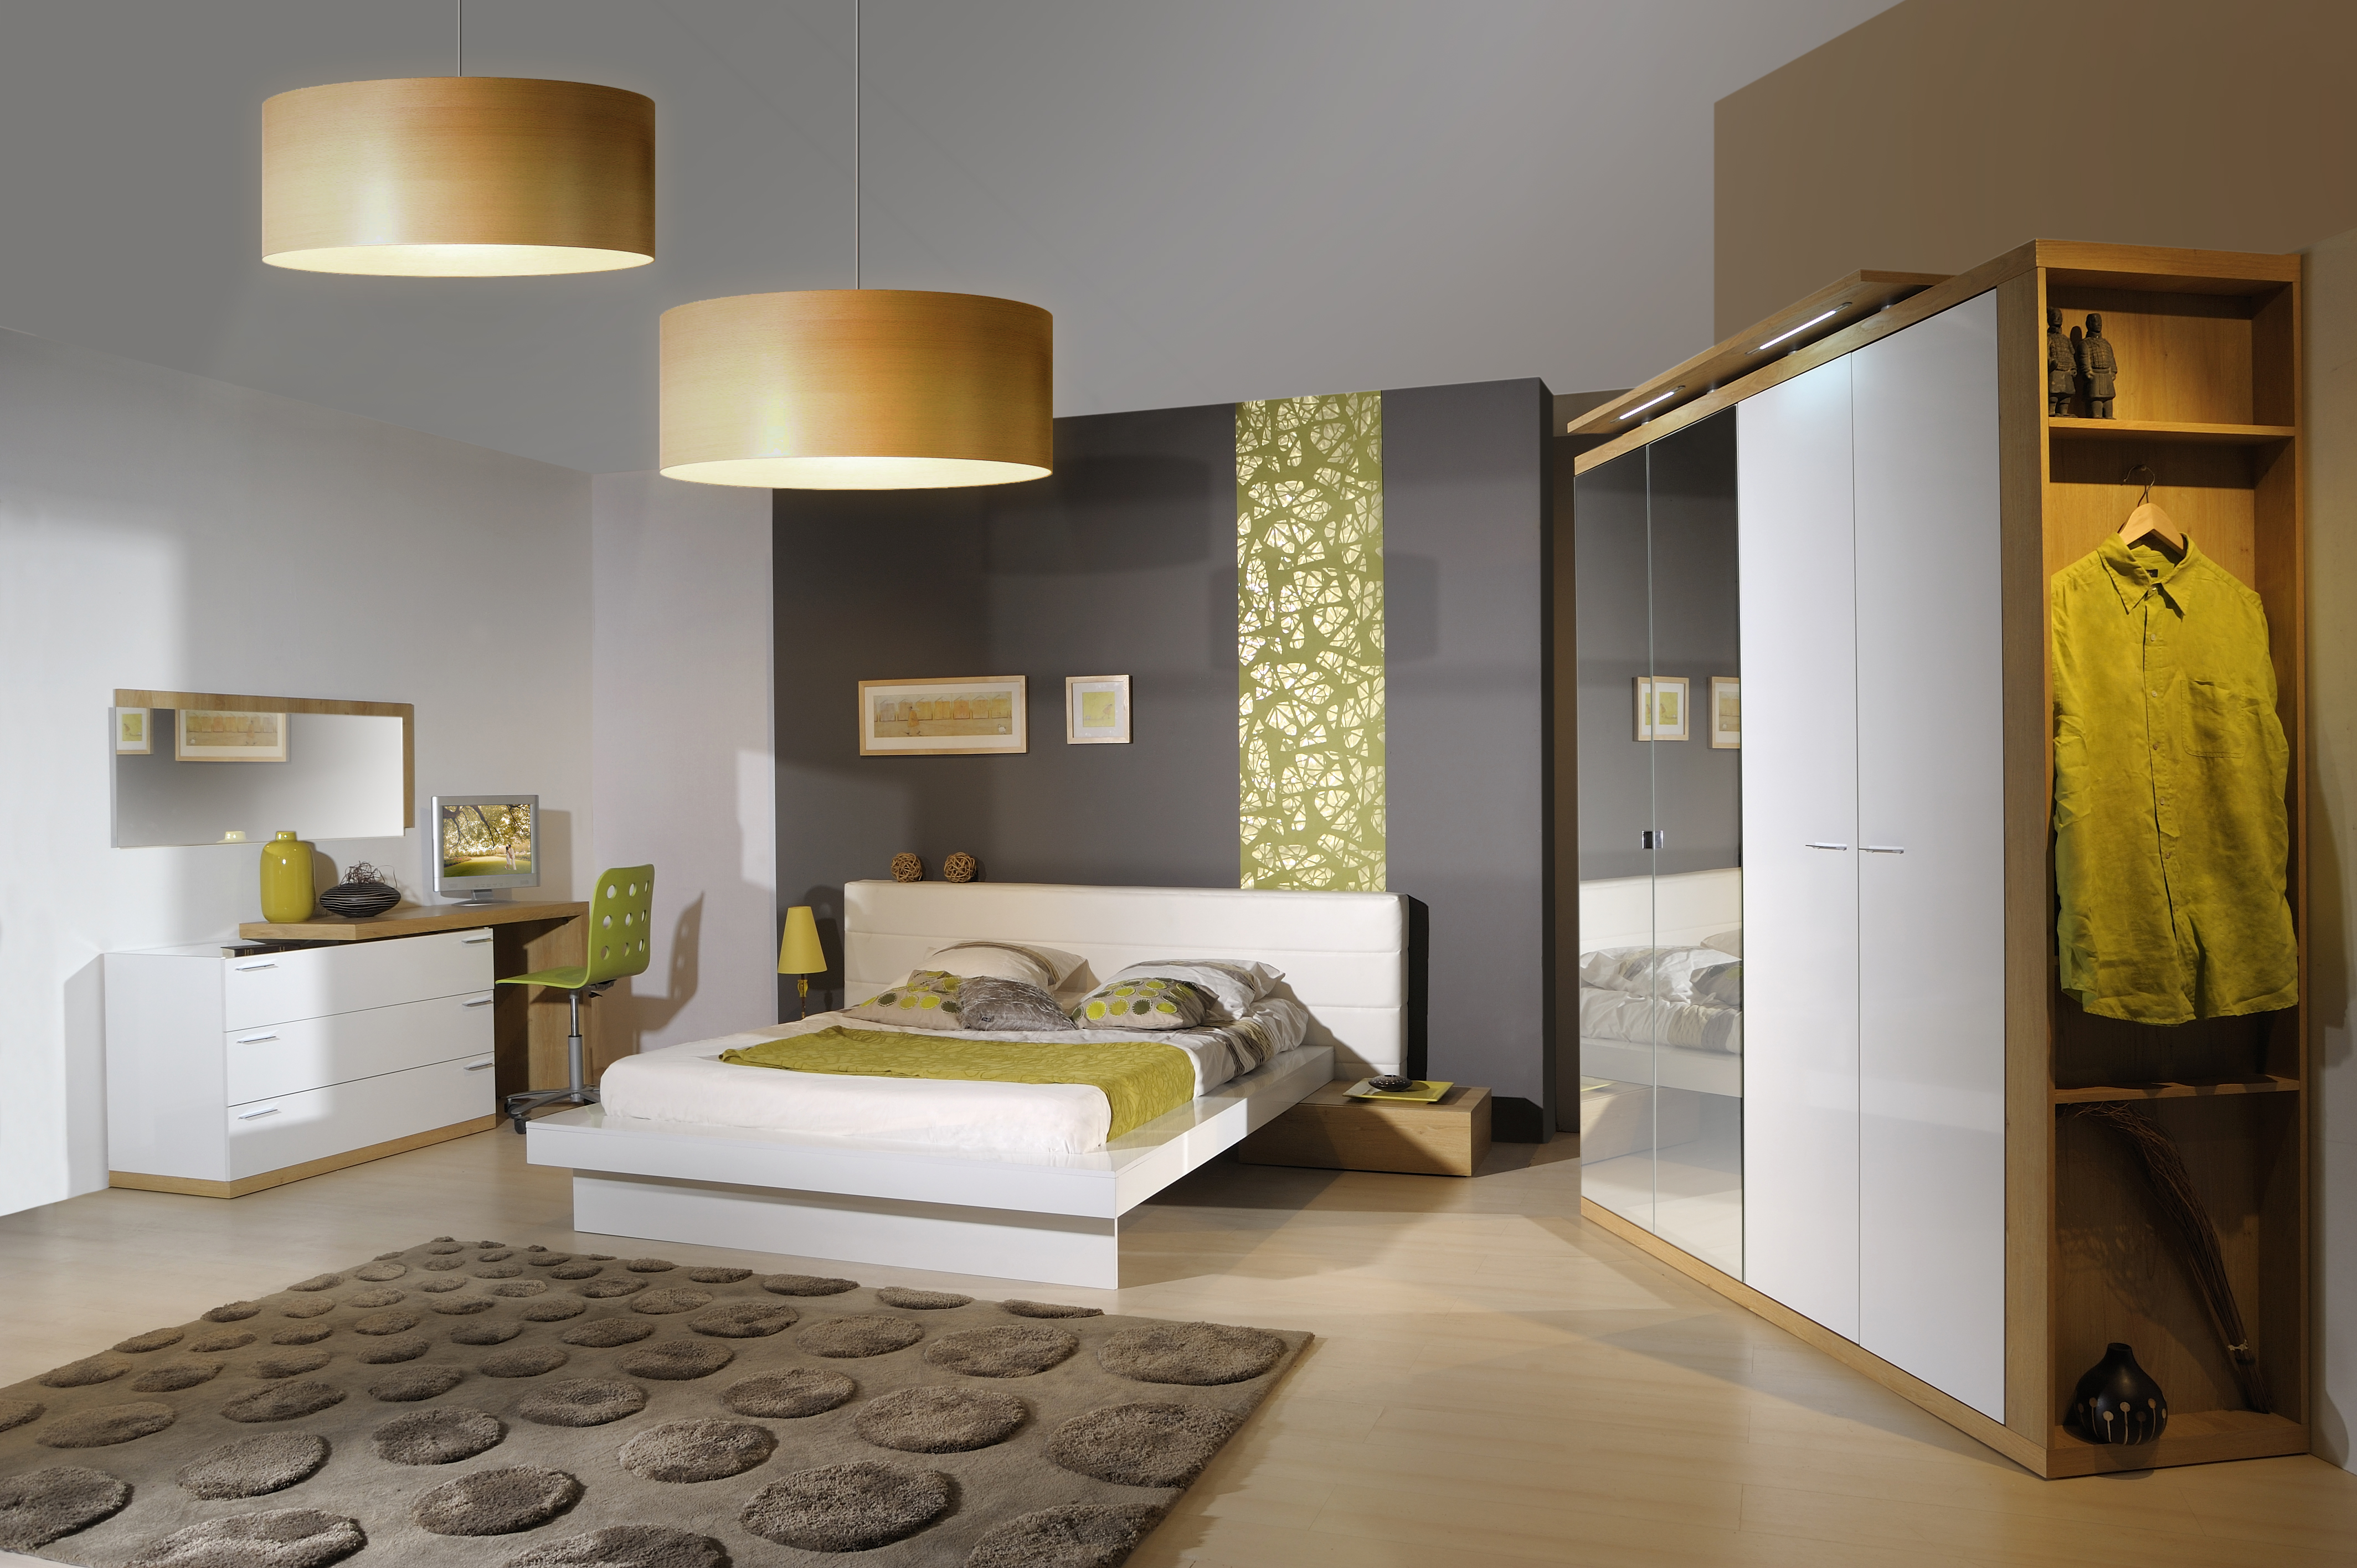 Gabungan warna putih dengan sedikit elemen kayu pada perabot menjadikan bilik tidur kontemporari ini nampak mewah